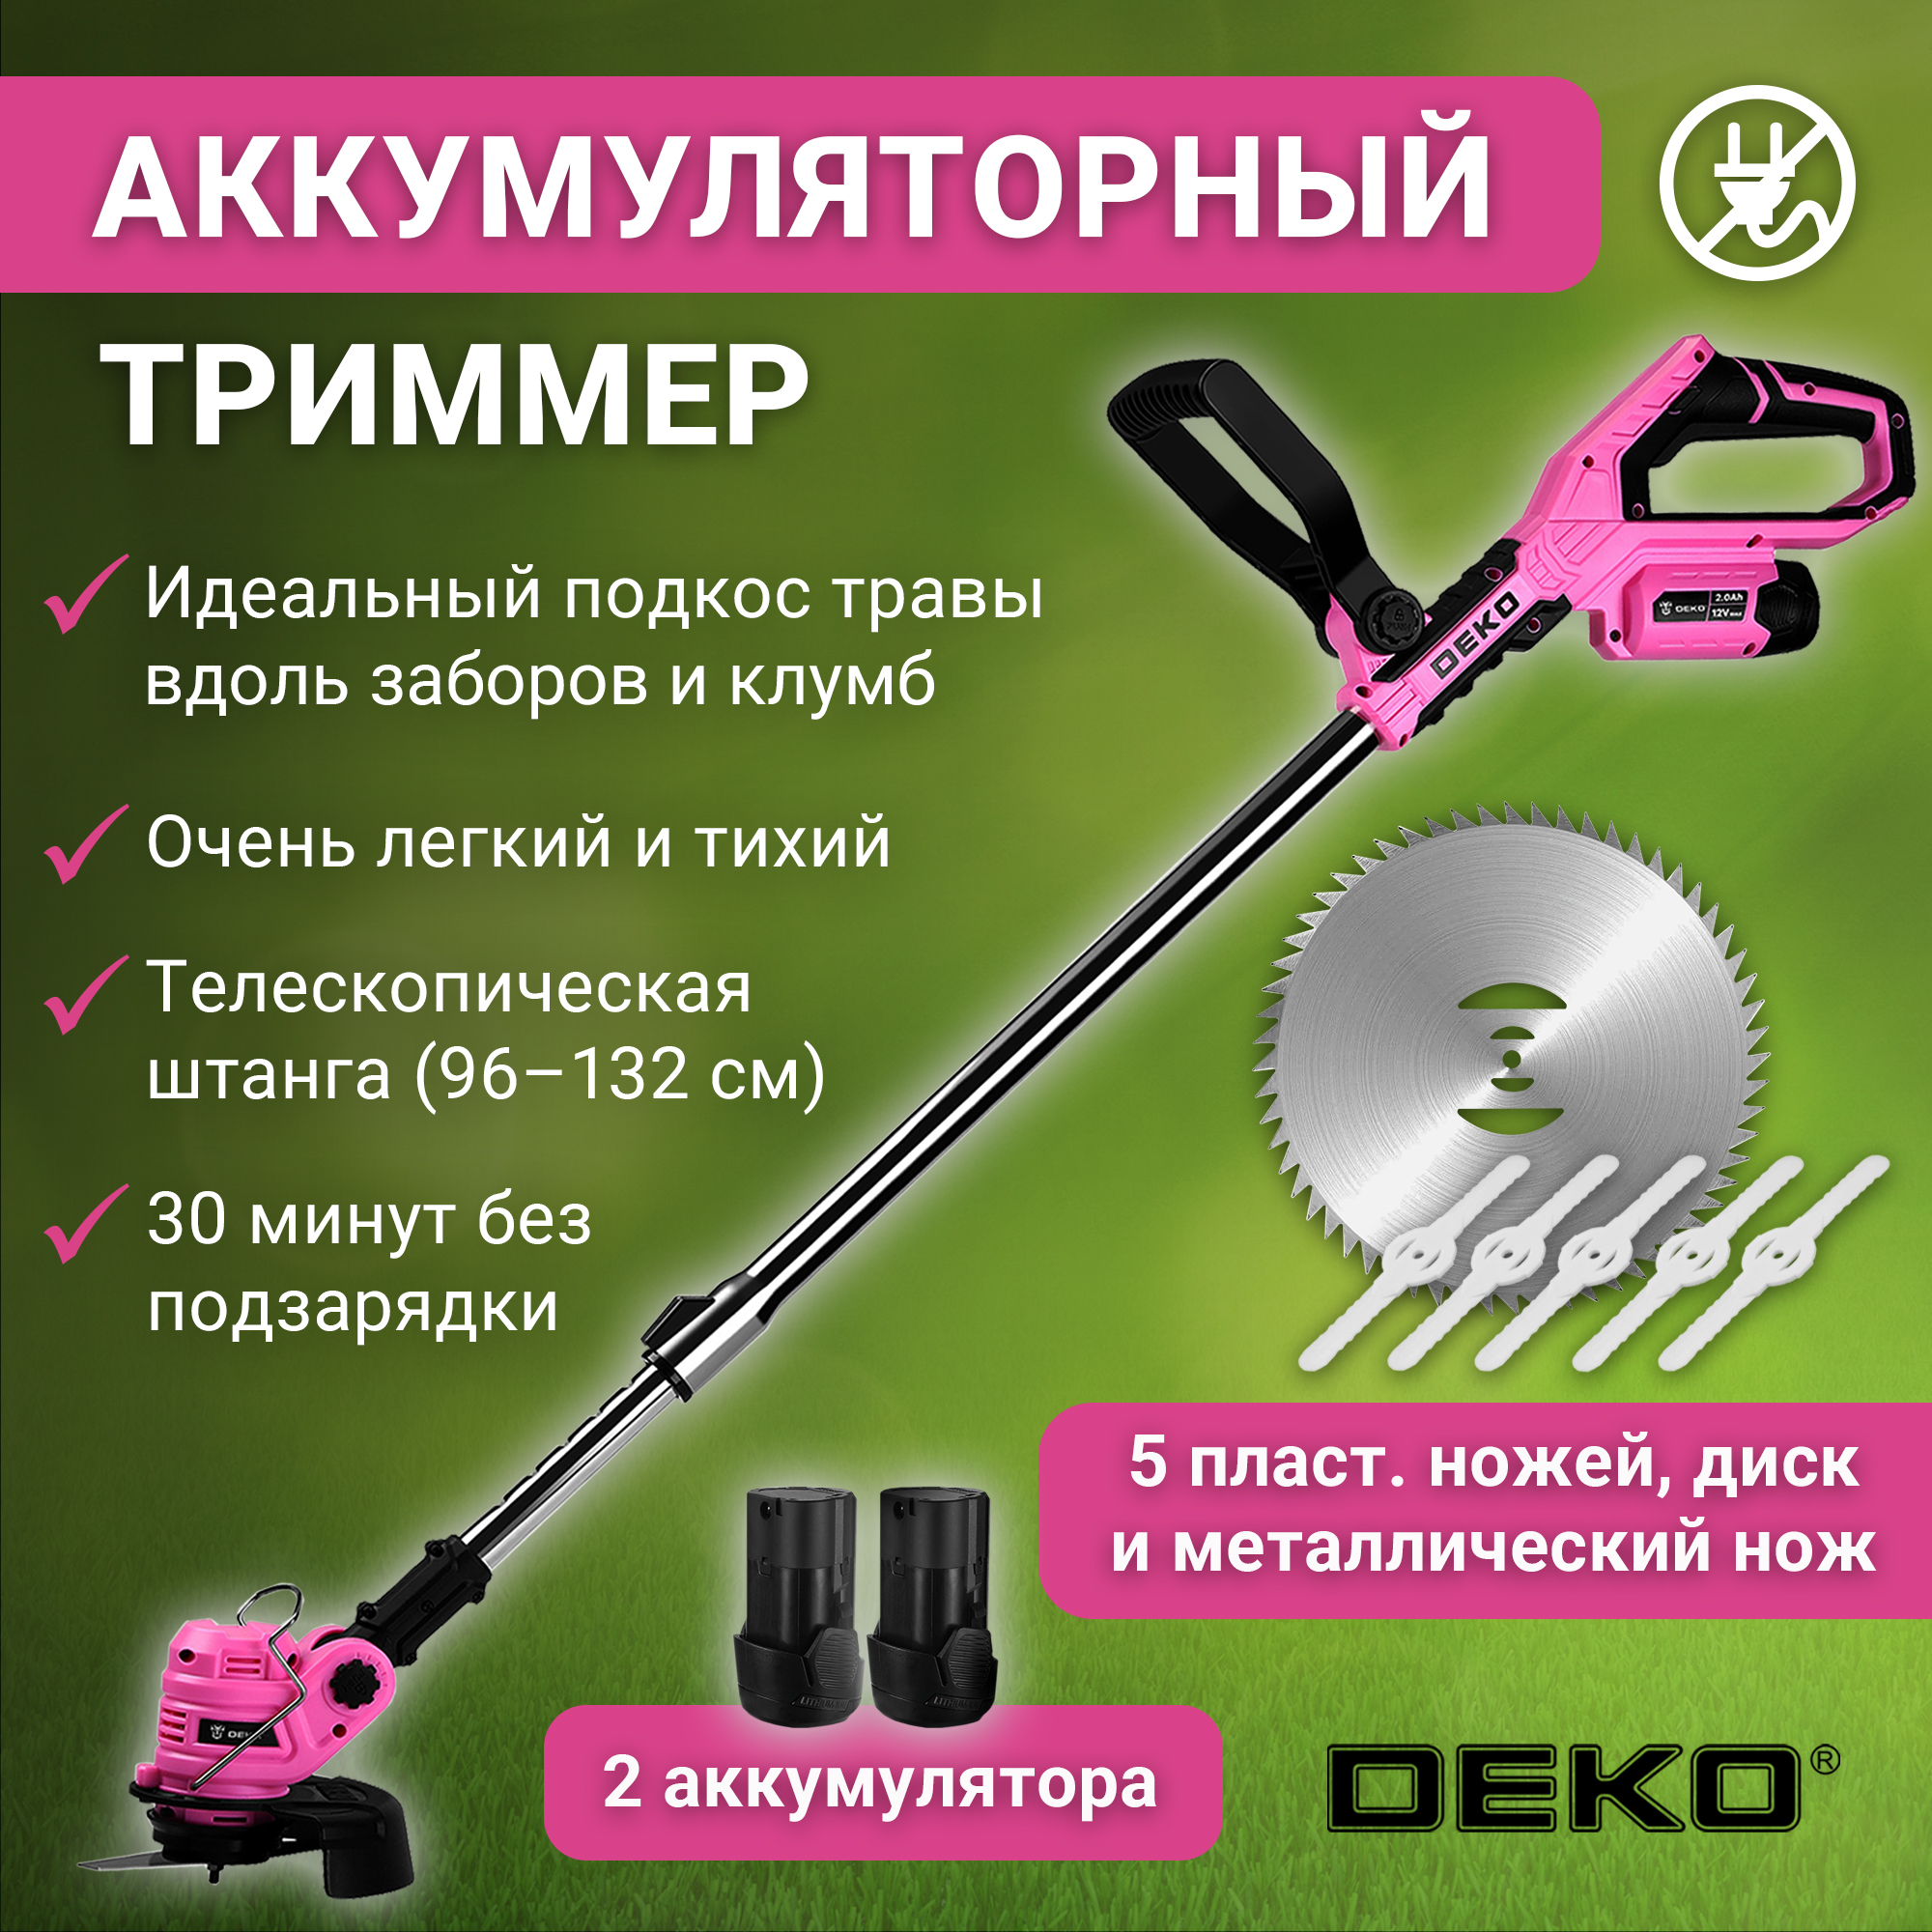 Триммер садовый аккумуляторный DEKO DKTR12 PINK, 2*2.0Ач 063-4409 - купить в Москве, цены на Мегамаркет | 600016101775